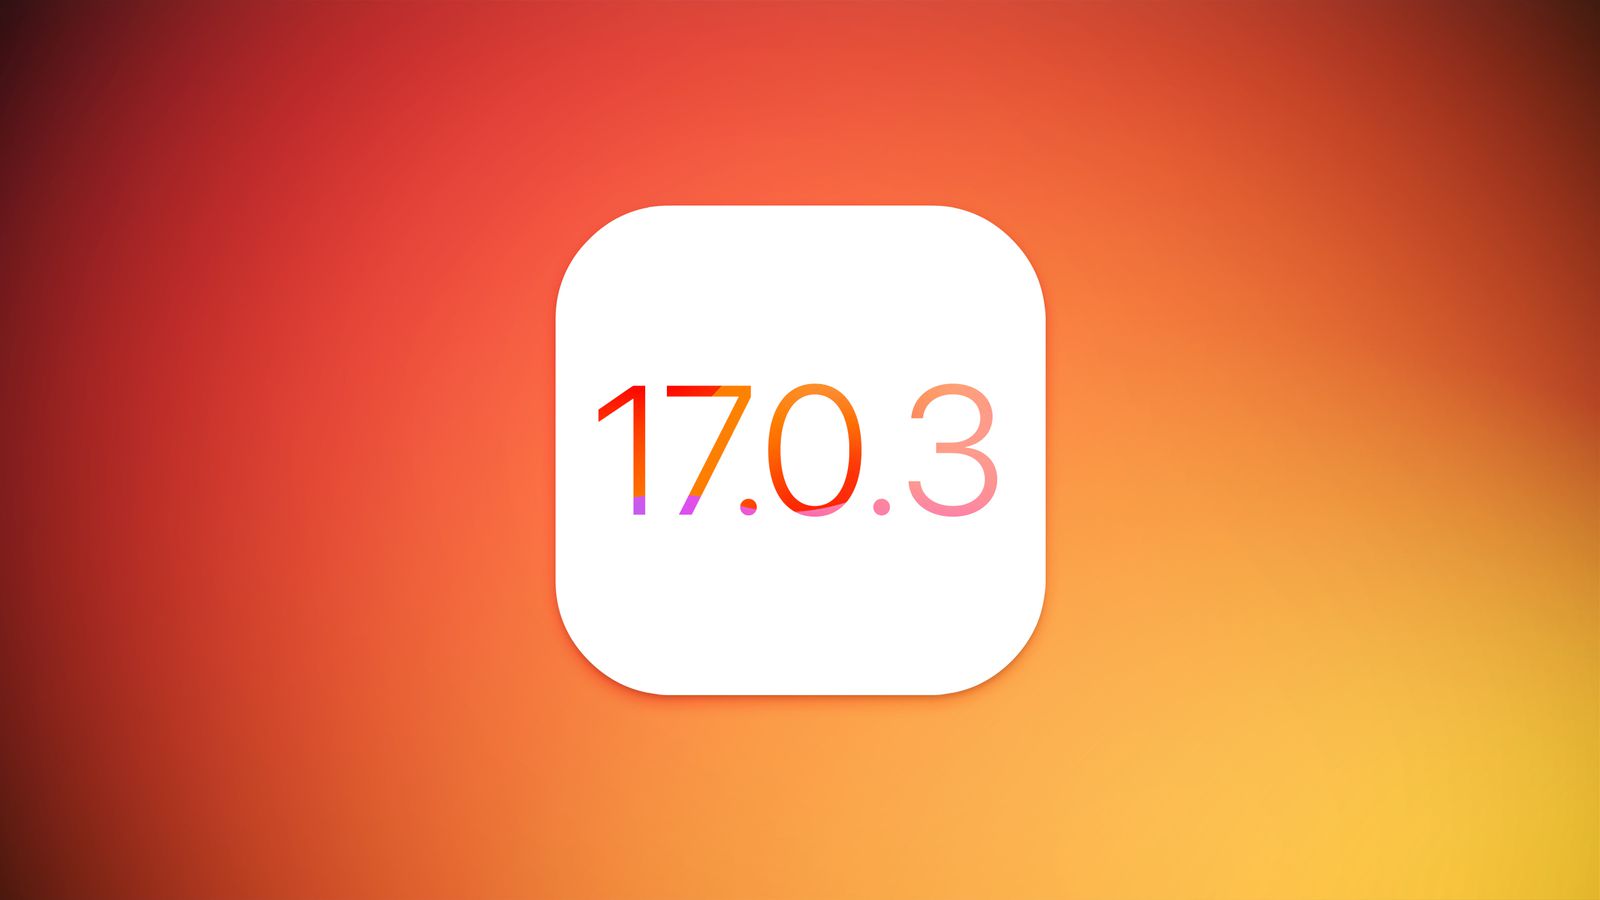 Apple прекратила подписывать iOS 17.0.3, а также непропатченные версии iOS 16, iOS 15